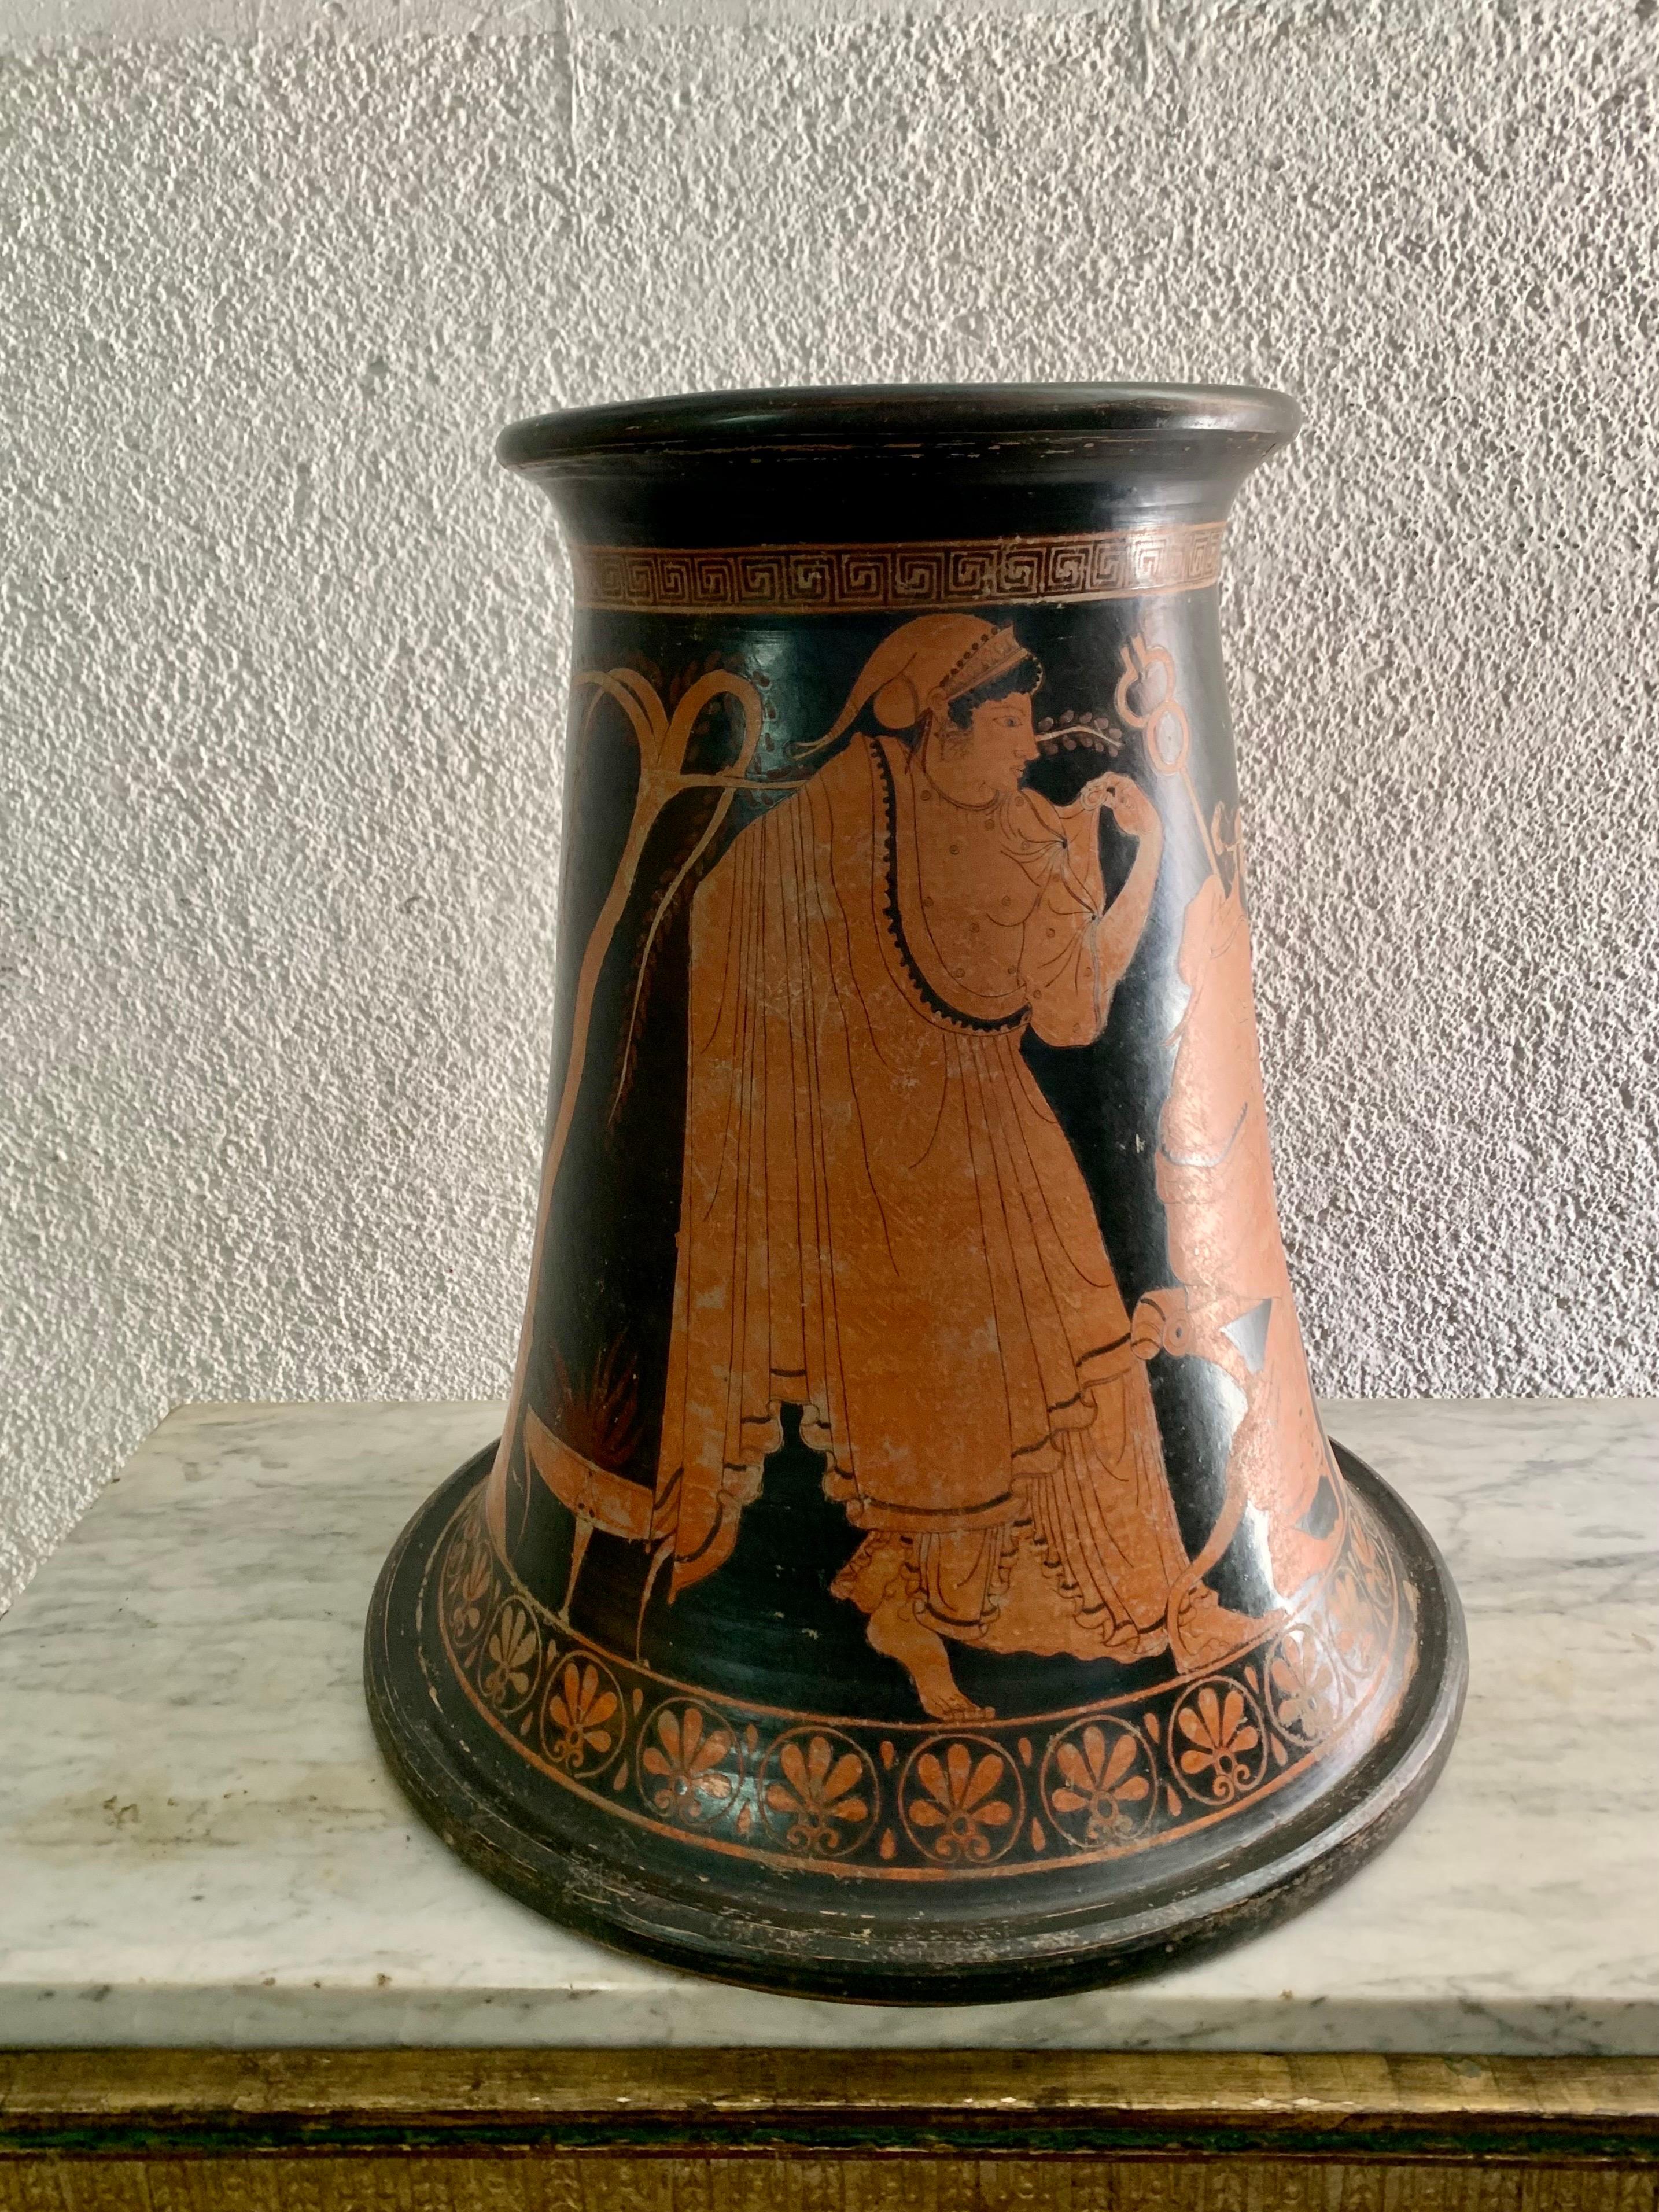 A GRAND TOUR replica of a Greek ceramic of the 